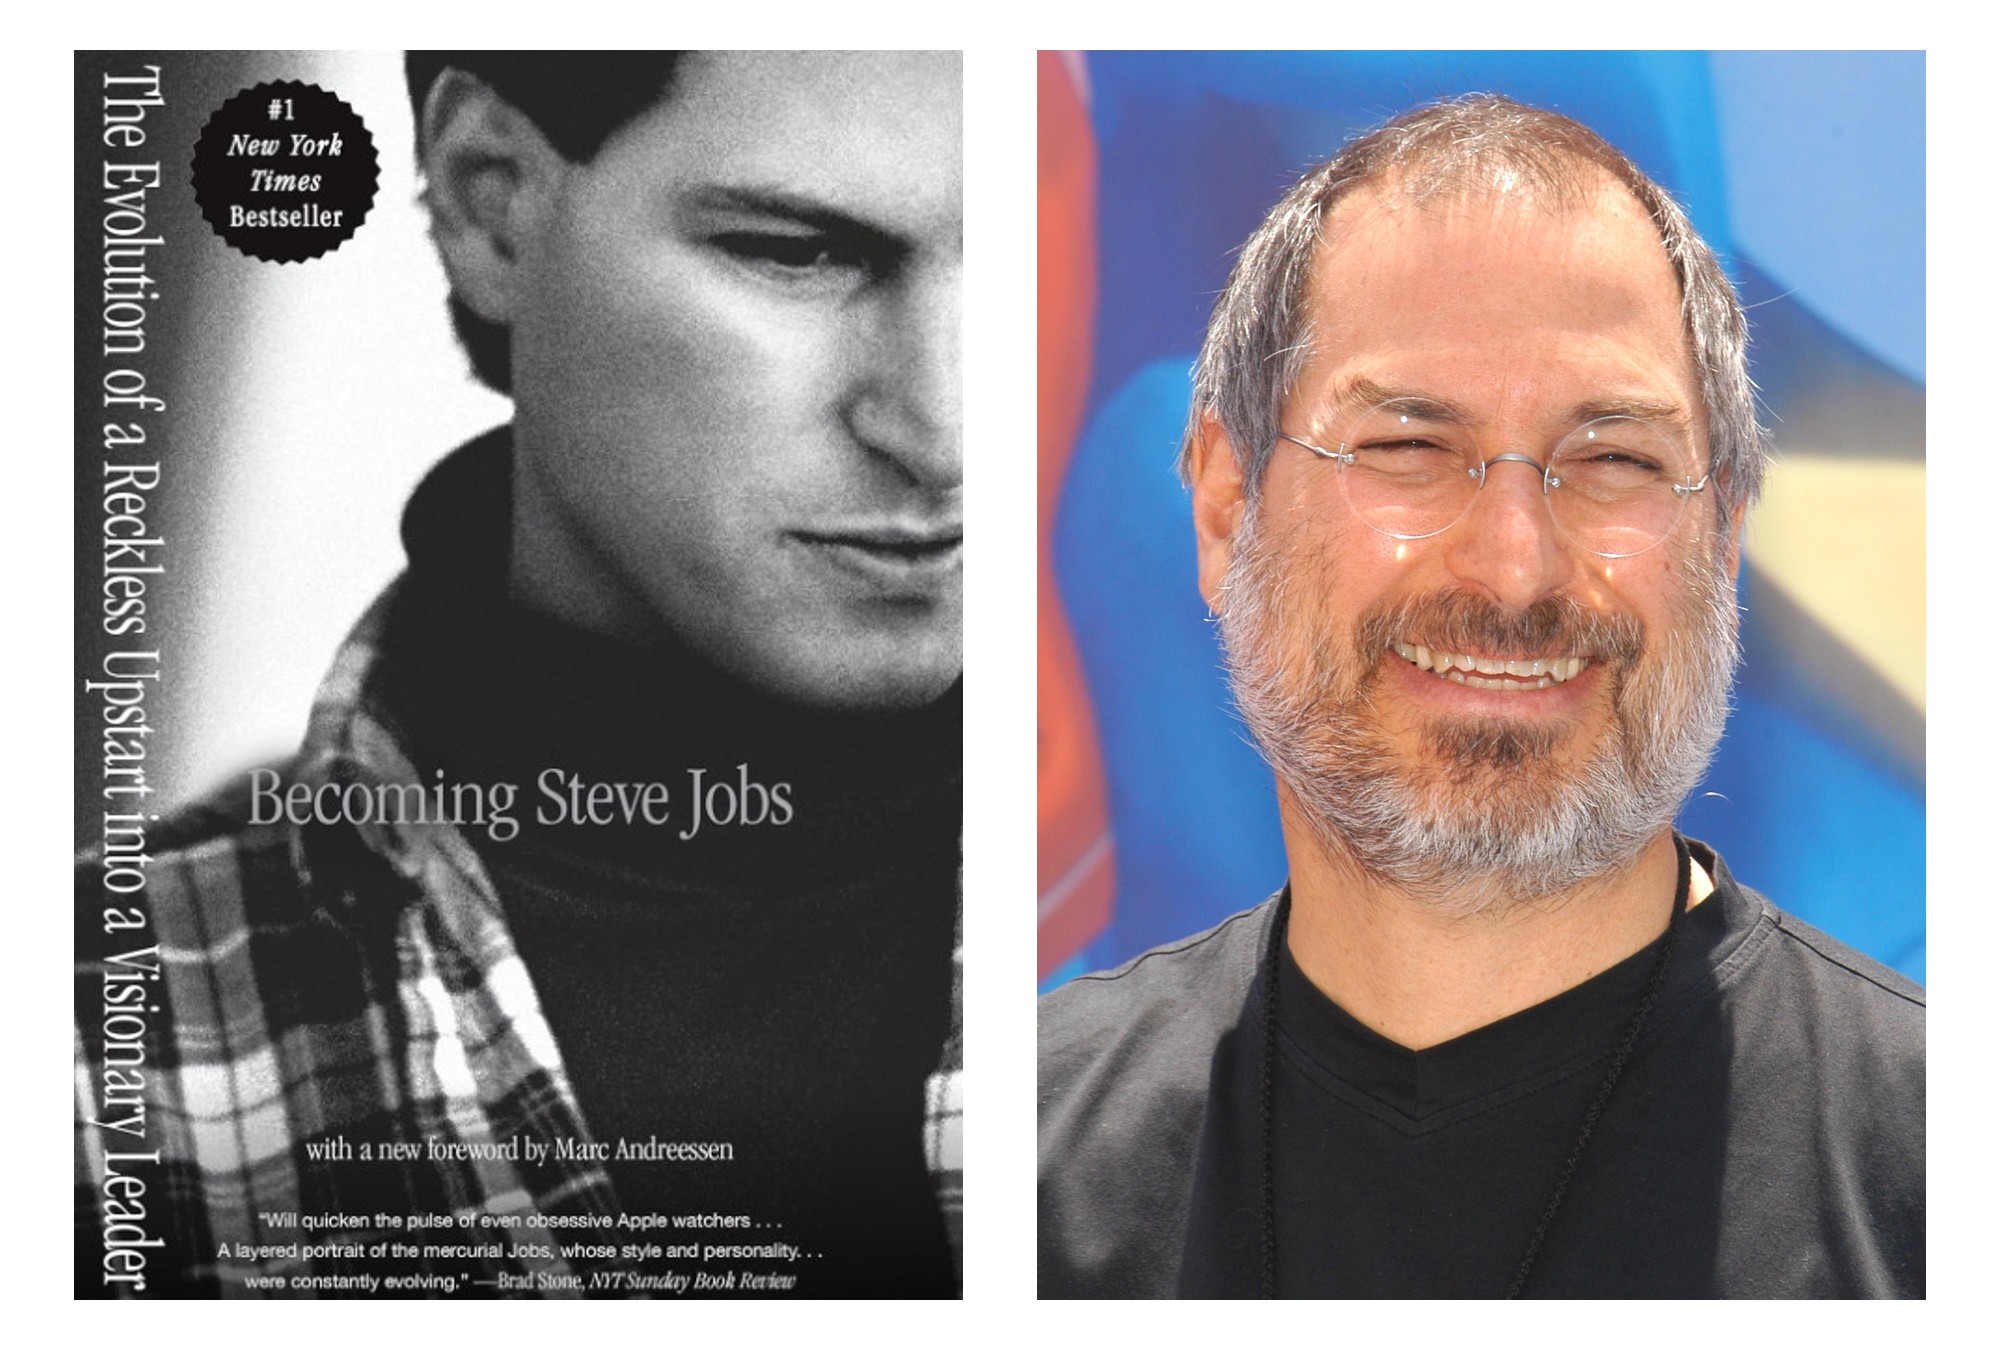 ¿Cómo crees que era el liderazgo de Steve Jobs?